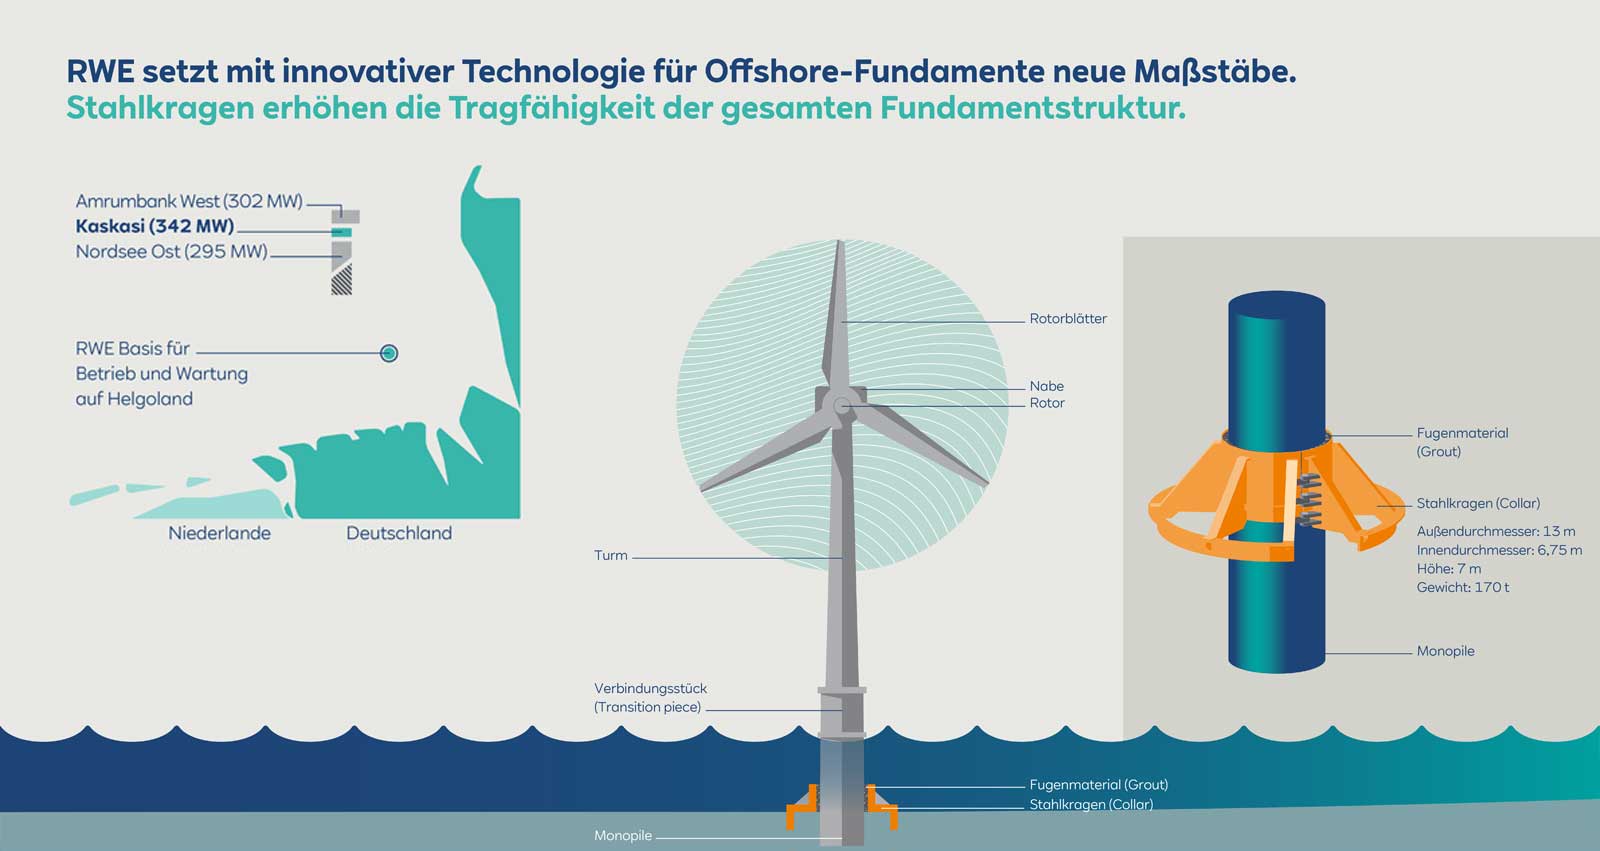 Innovative Technologie für Offshore-Fundamente - Stahlkragen erhöhen Tragfähigkeit der gesamten Fundamentstruktur | RWE Kaskasi